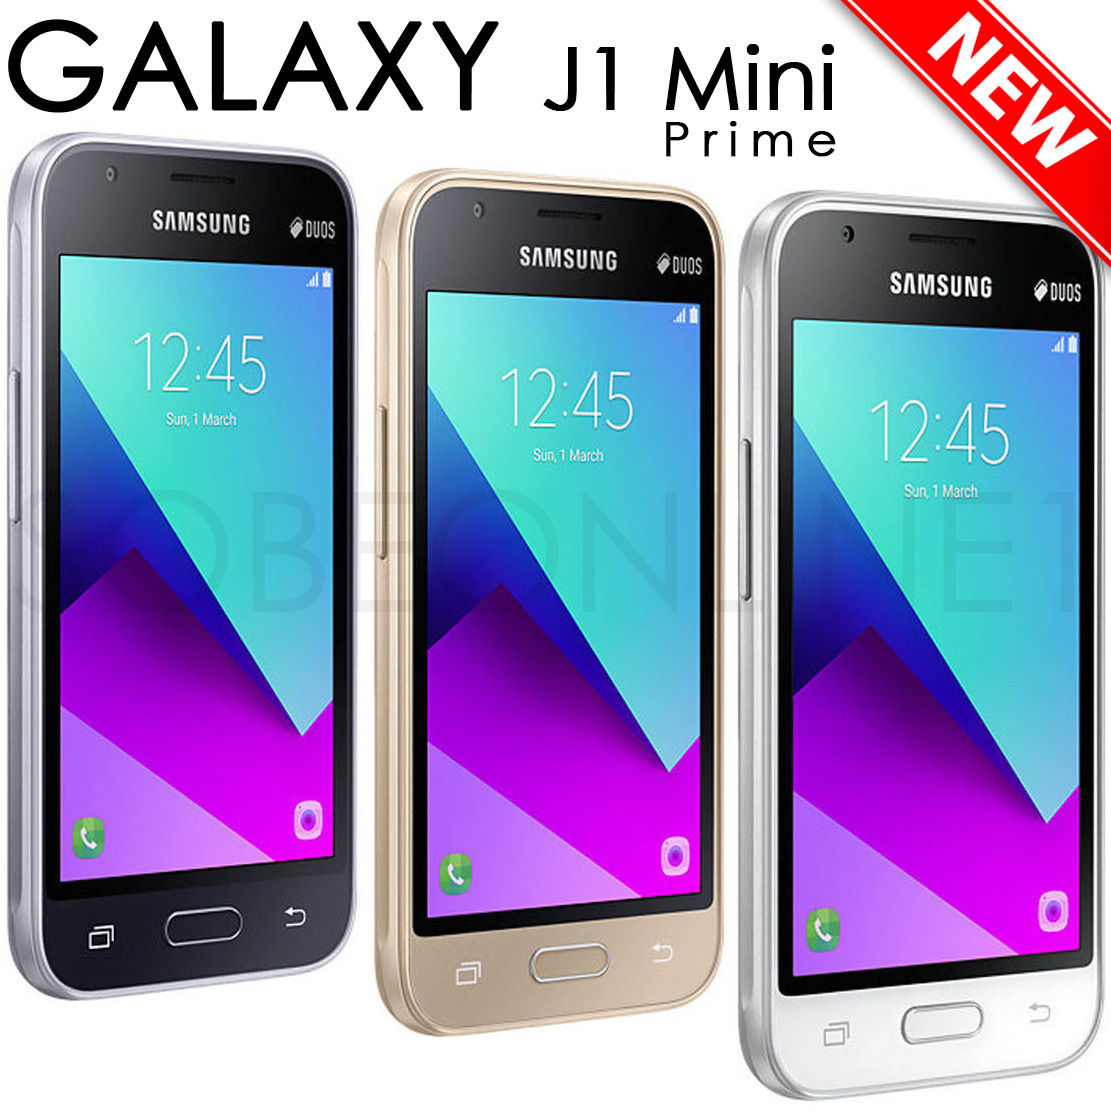 Samsung galaxy mini j105h. Samsung Galaxy j1 Mini. Samsung j1 Mini Prime. Samsung Galaxy j1 Mini Prime. Samsung Galaxy j1 Prime.